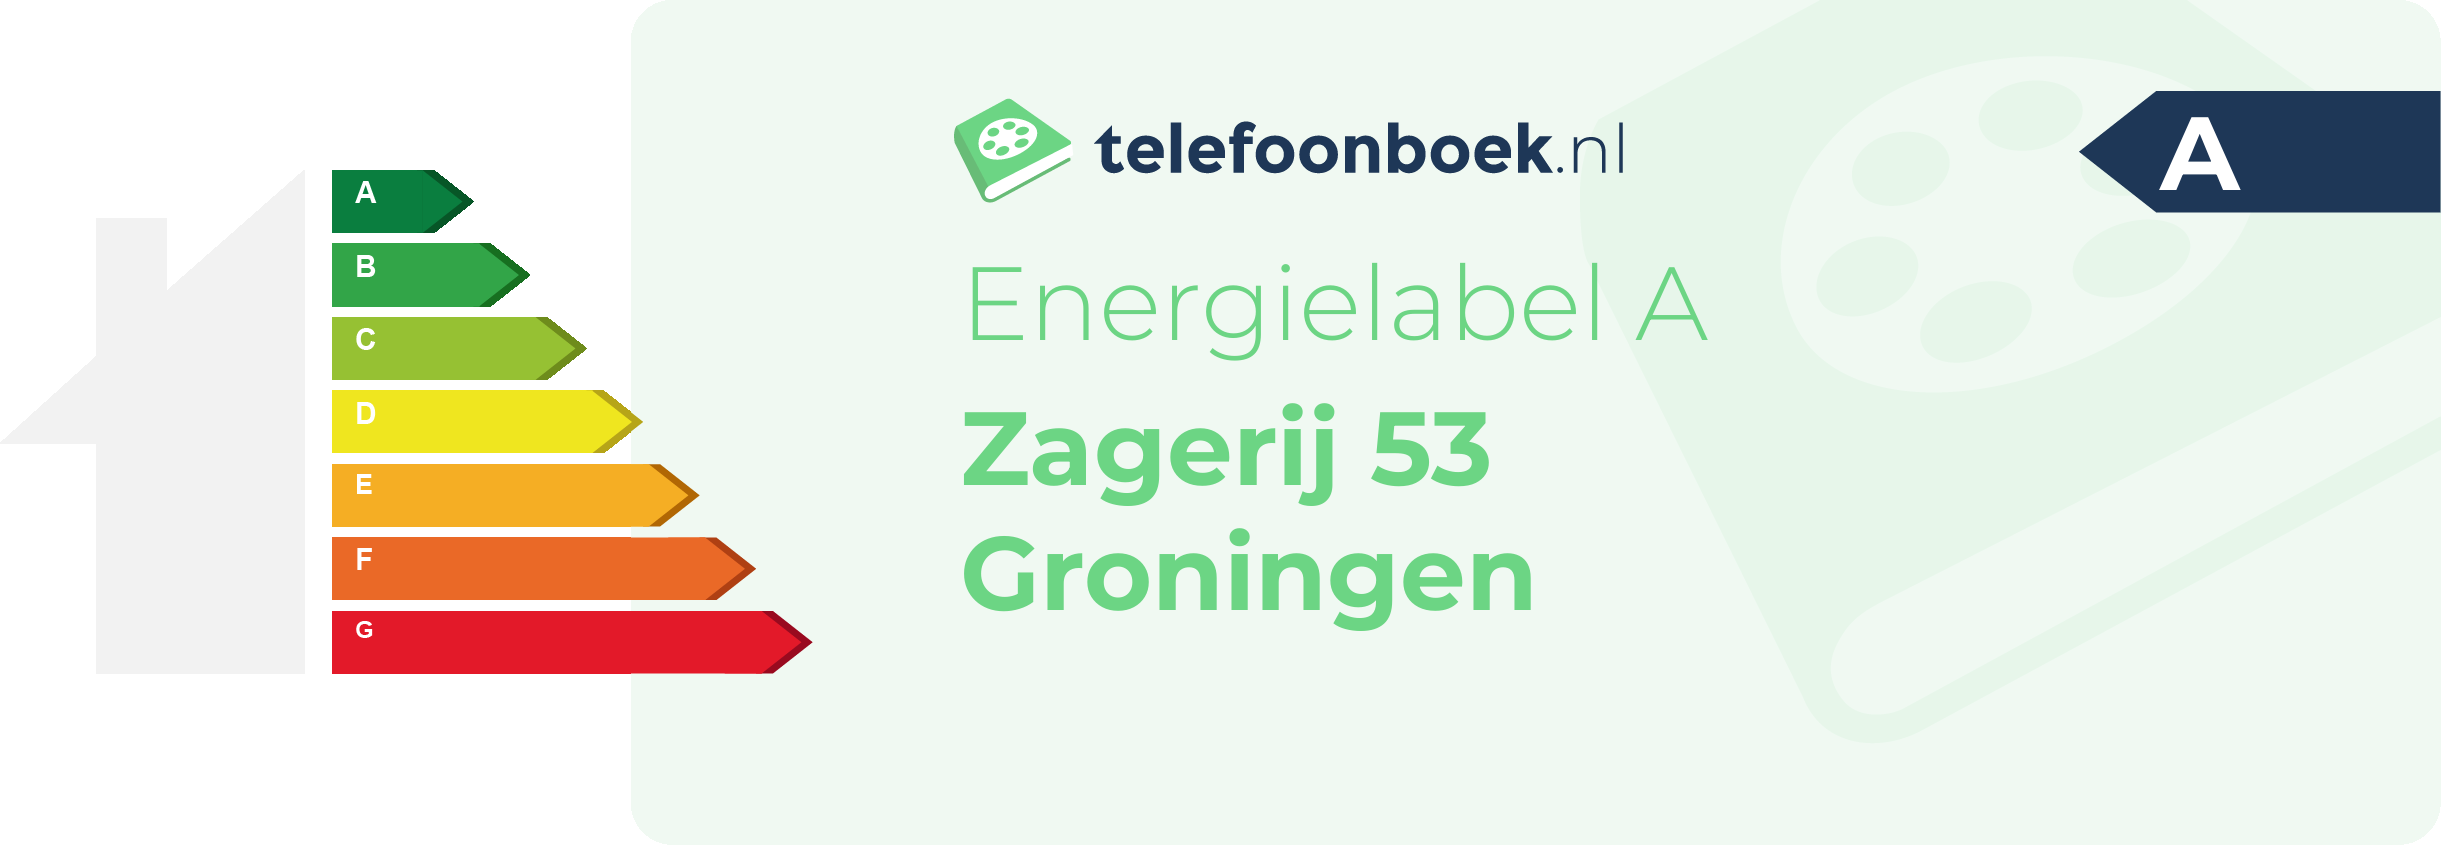 Energielabel Zagerij 53 Groningen